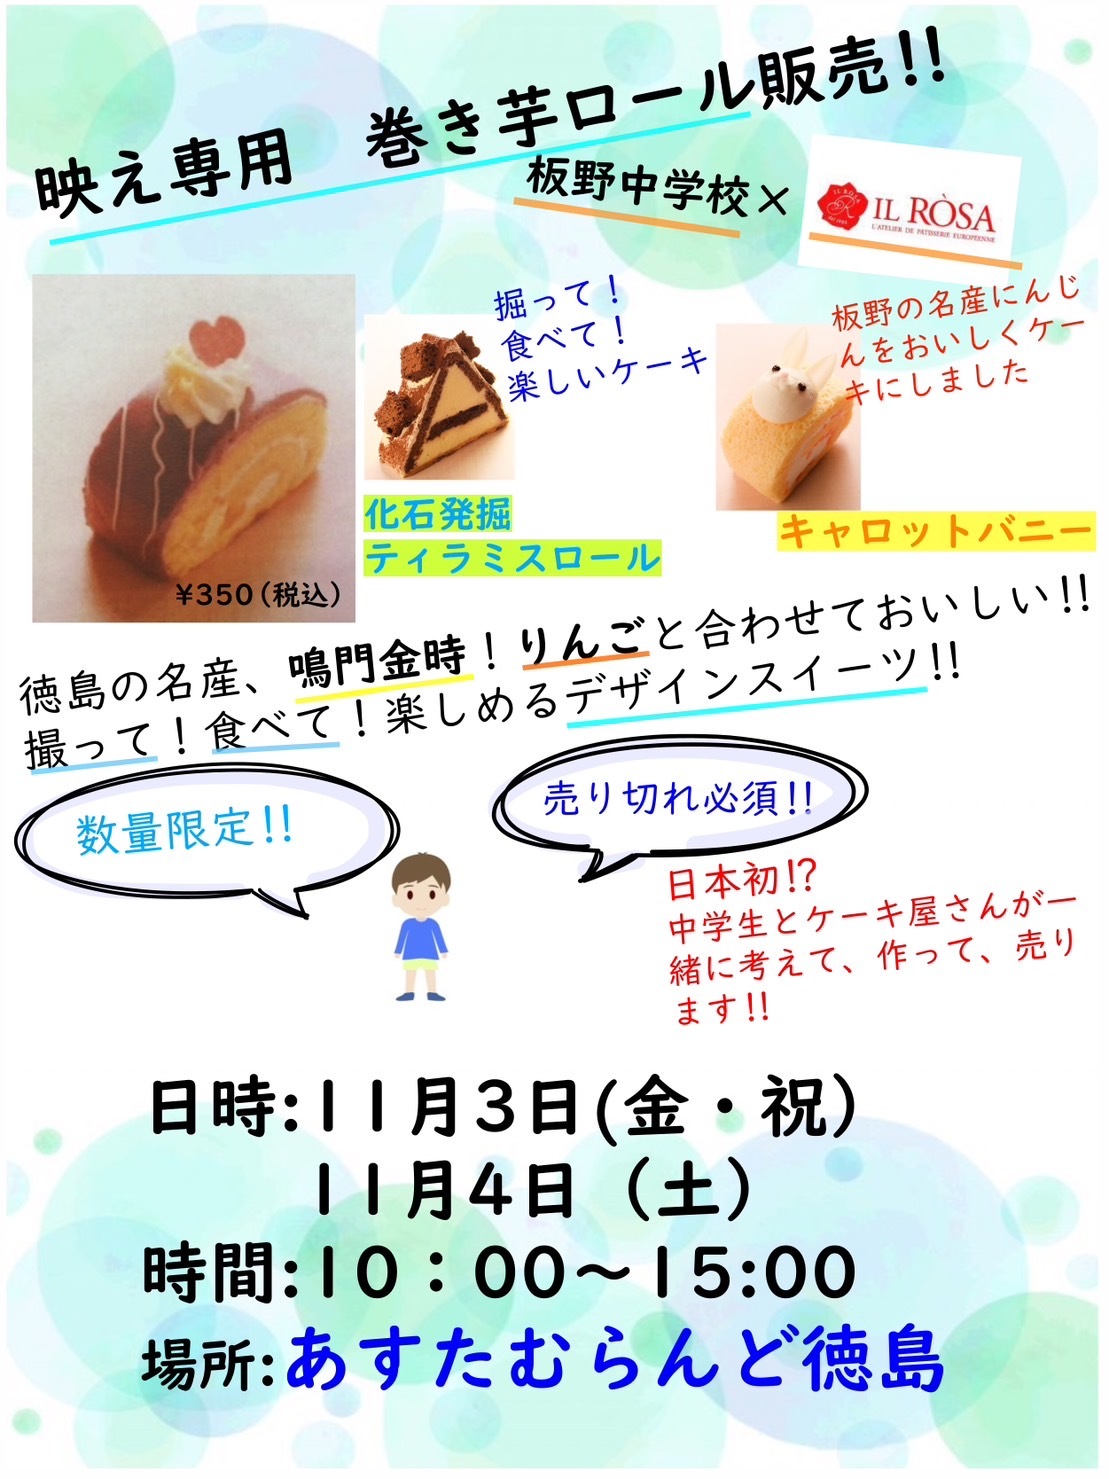 「あすたむらんど徳島」でのコラボケーキ販売について。